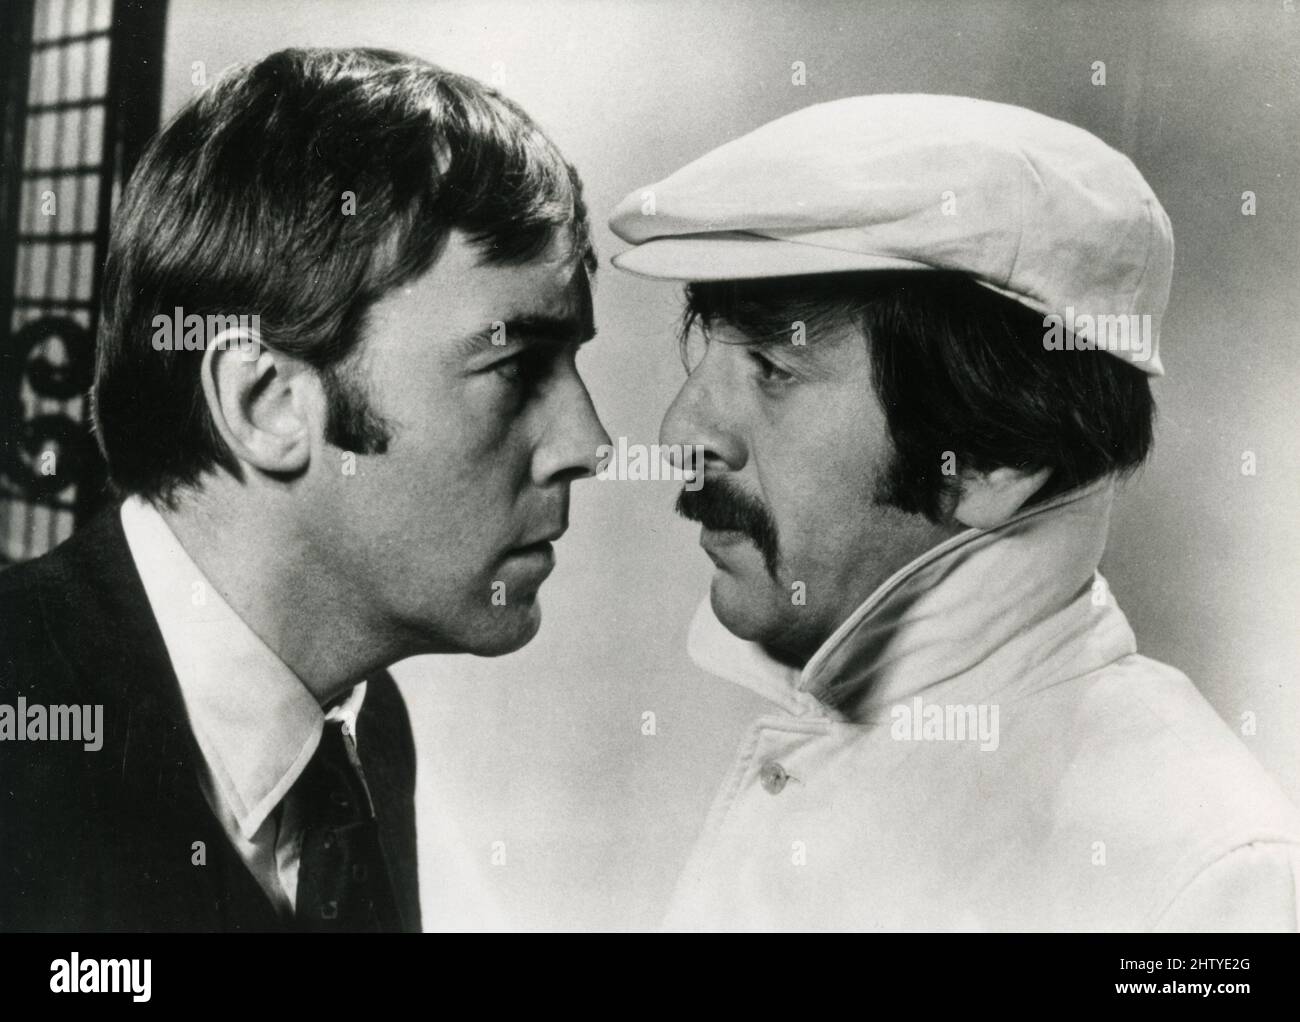 Acteurs Haym Topol et Michael Jayston (à gauche) dans le film Suivez-moi!, UK 1972 Banque D'Images